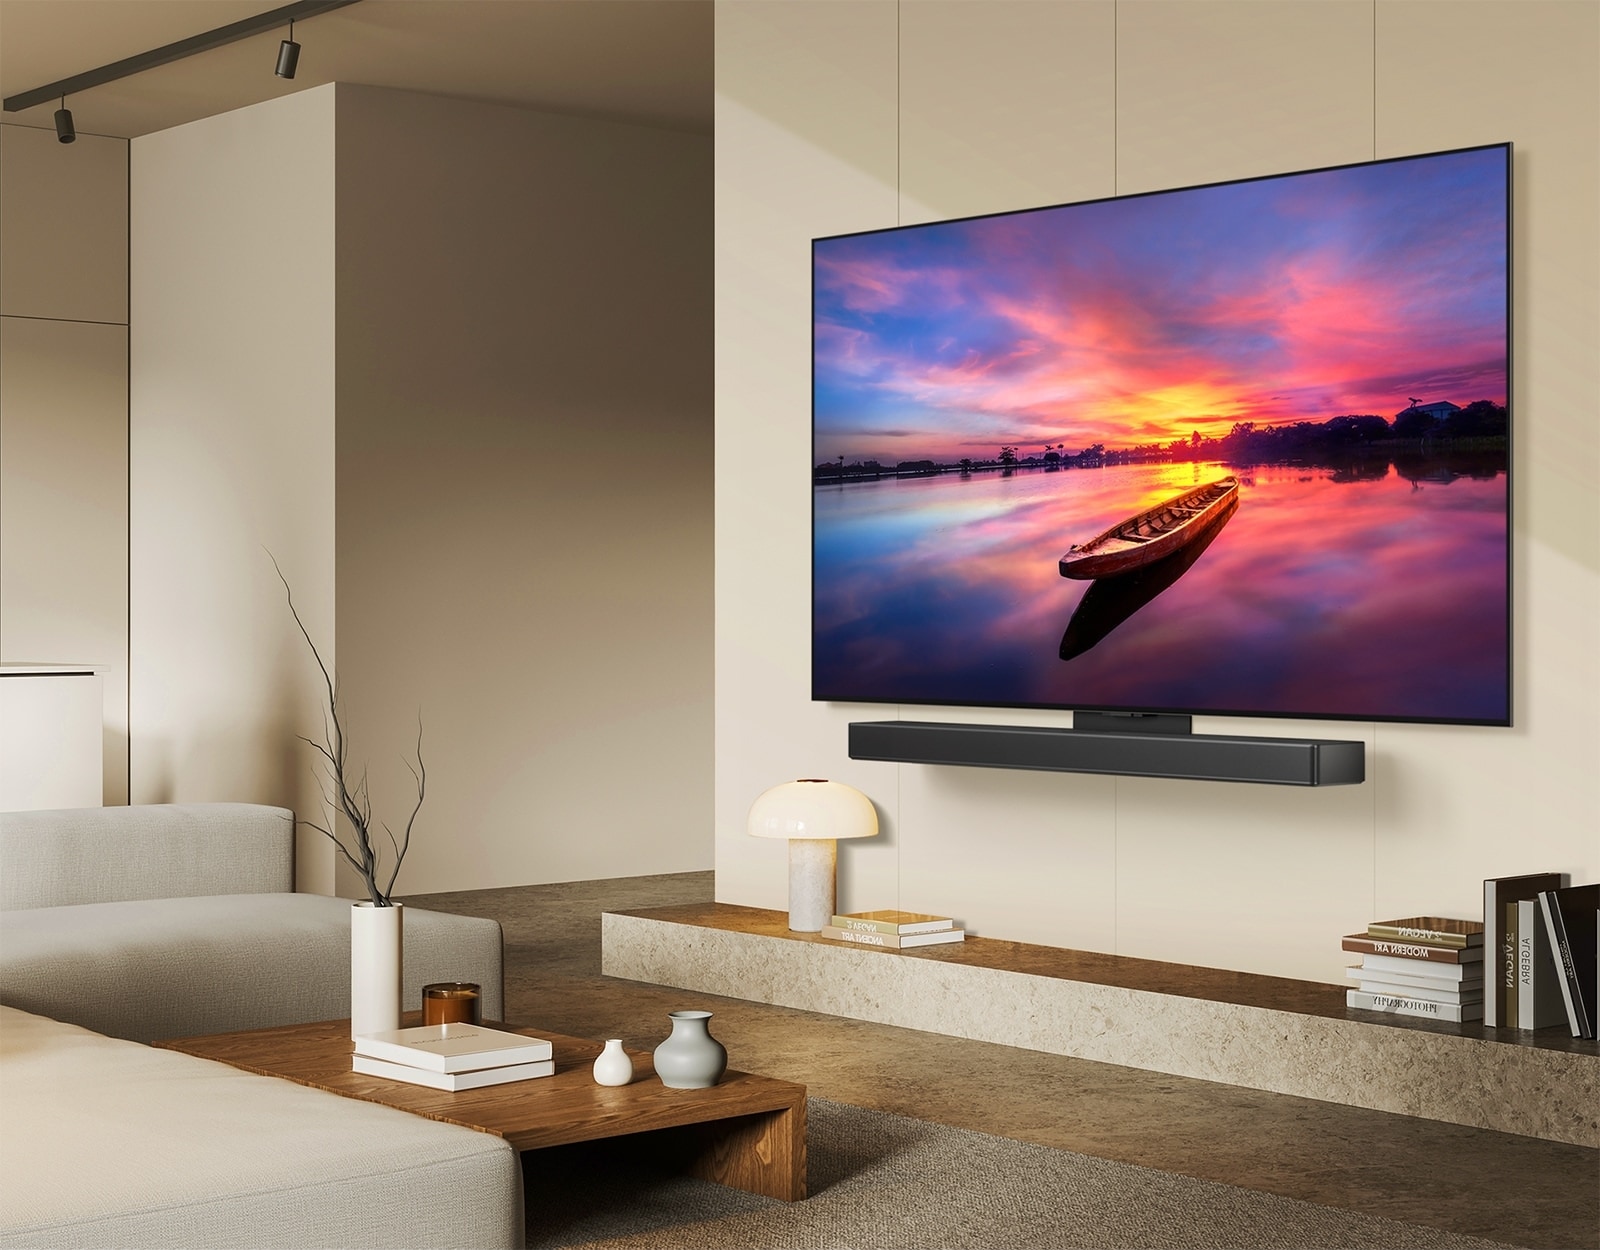 LG OLED TV، OLED C4 بزاوية 45 درجة إلى اليسار ويعرض غروب الشمس الجميل مع قارب على البحيرة، حيث يتم توصيل التلفزيون بمكبر صوت LG عبر قوس Synergy في غرفة معيشة بسيطة.